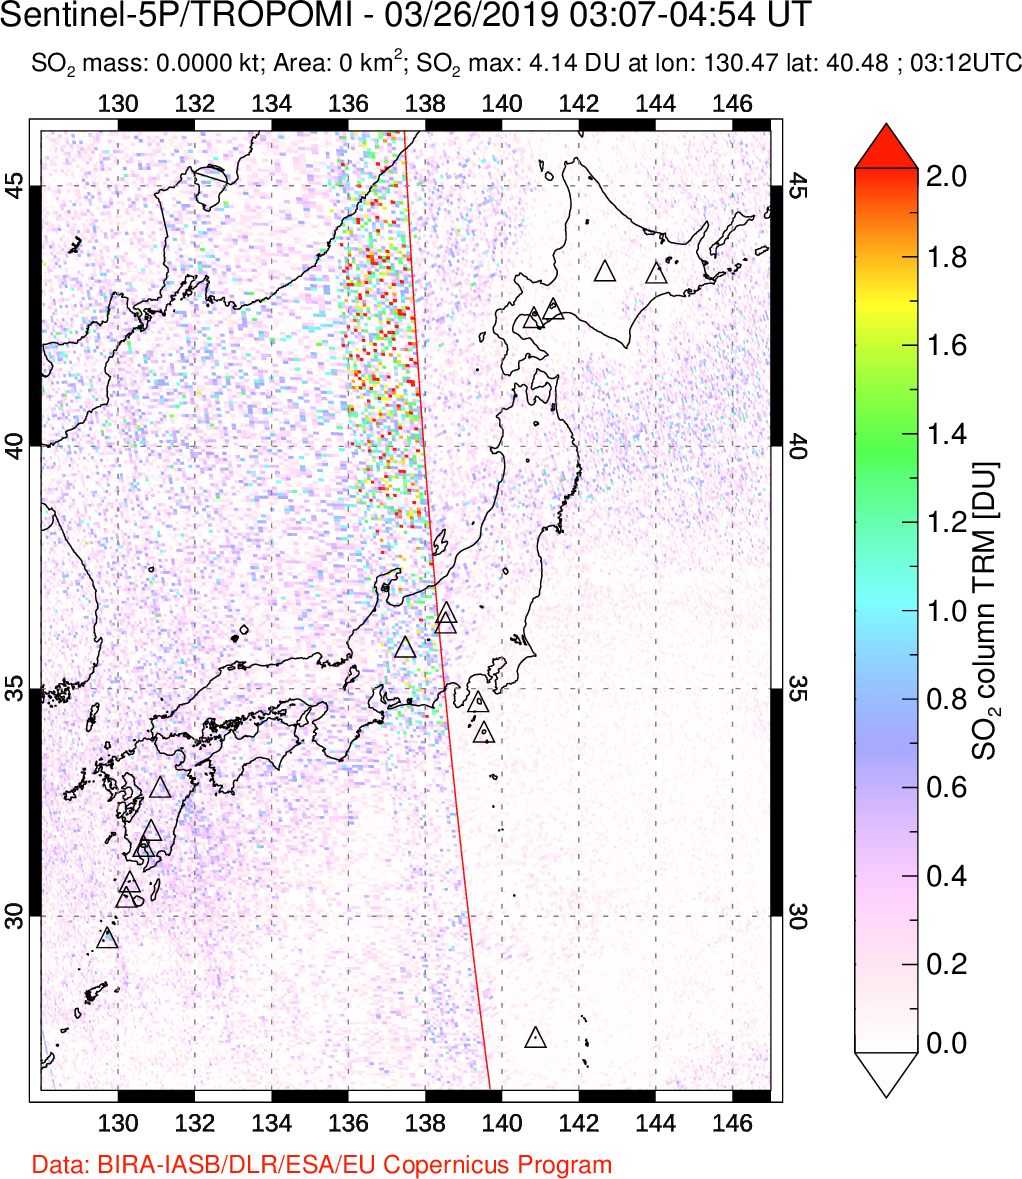 A sulfur dioxide image over Japan on Mar 26, 2019.